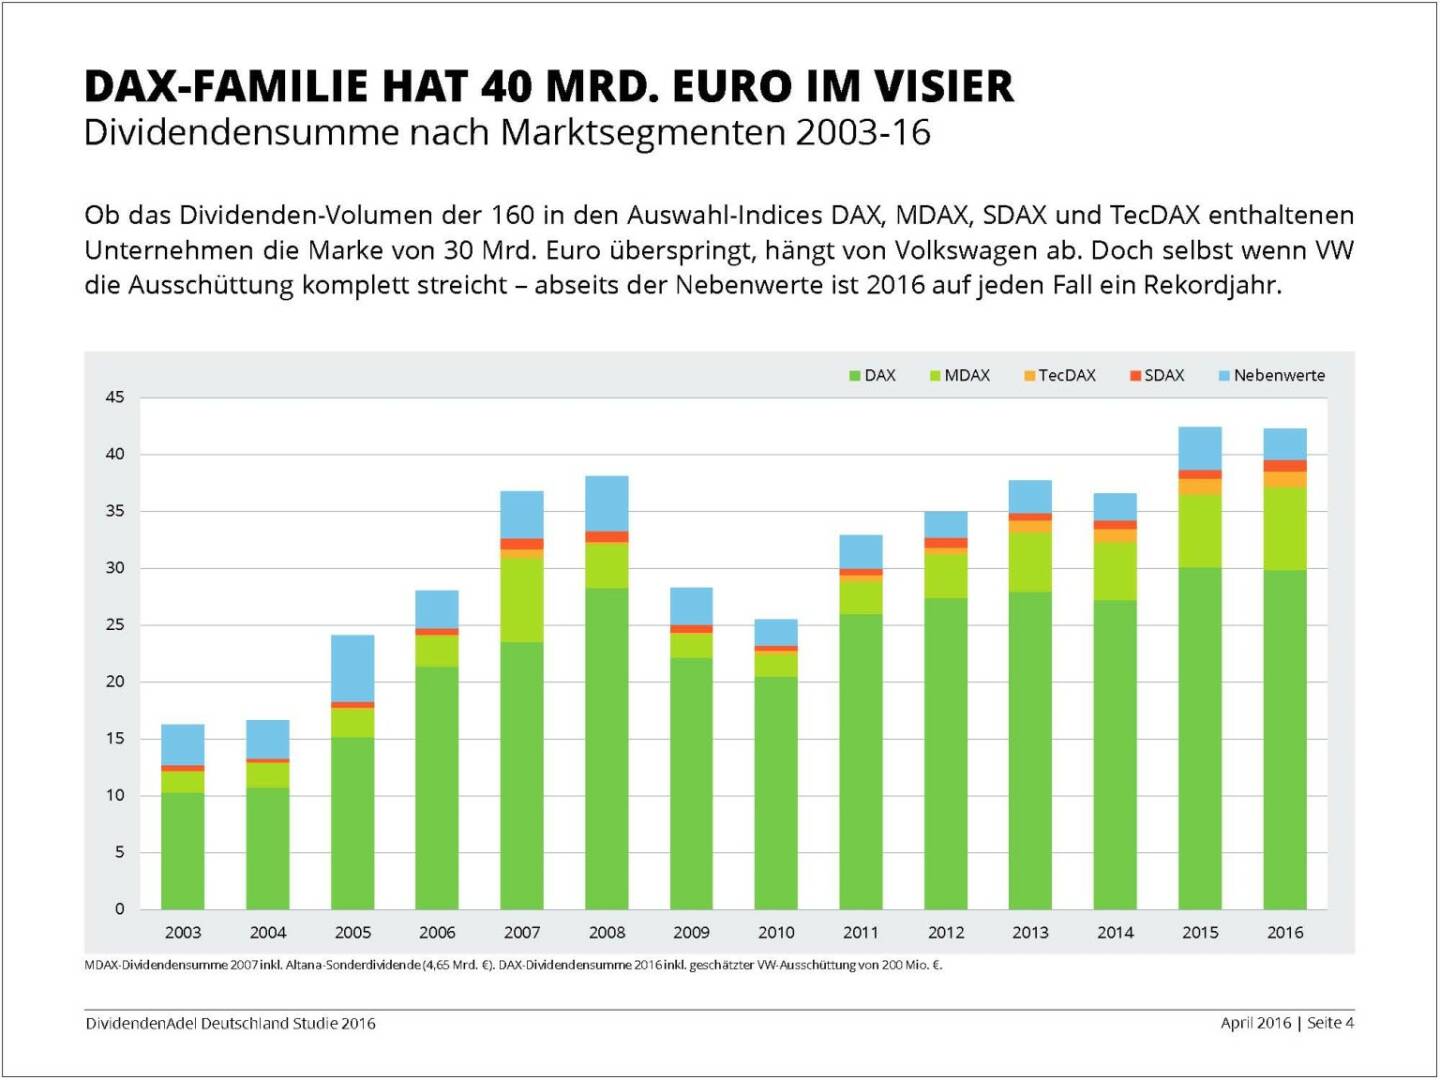 Dividendenstudie 2016: DAX-Familie hat 40 Mrd. Euro im Visier